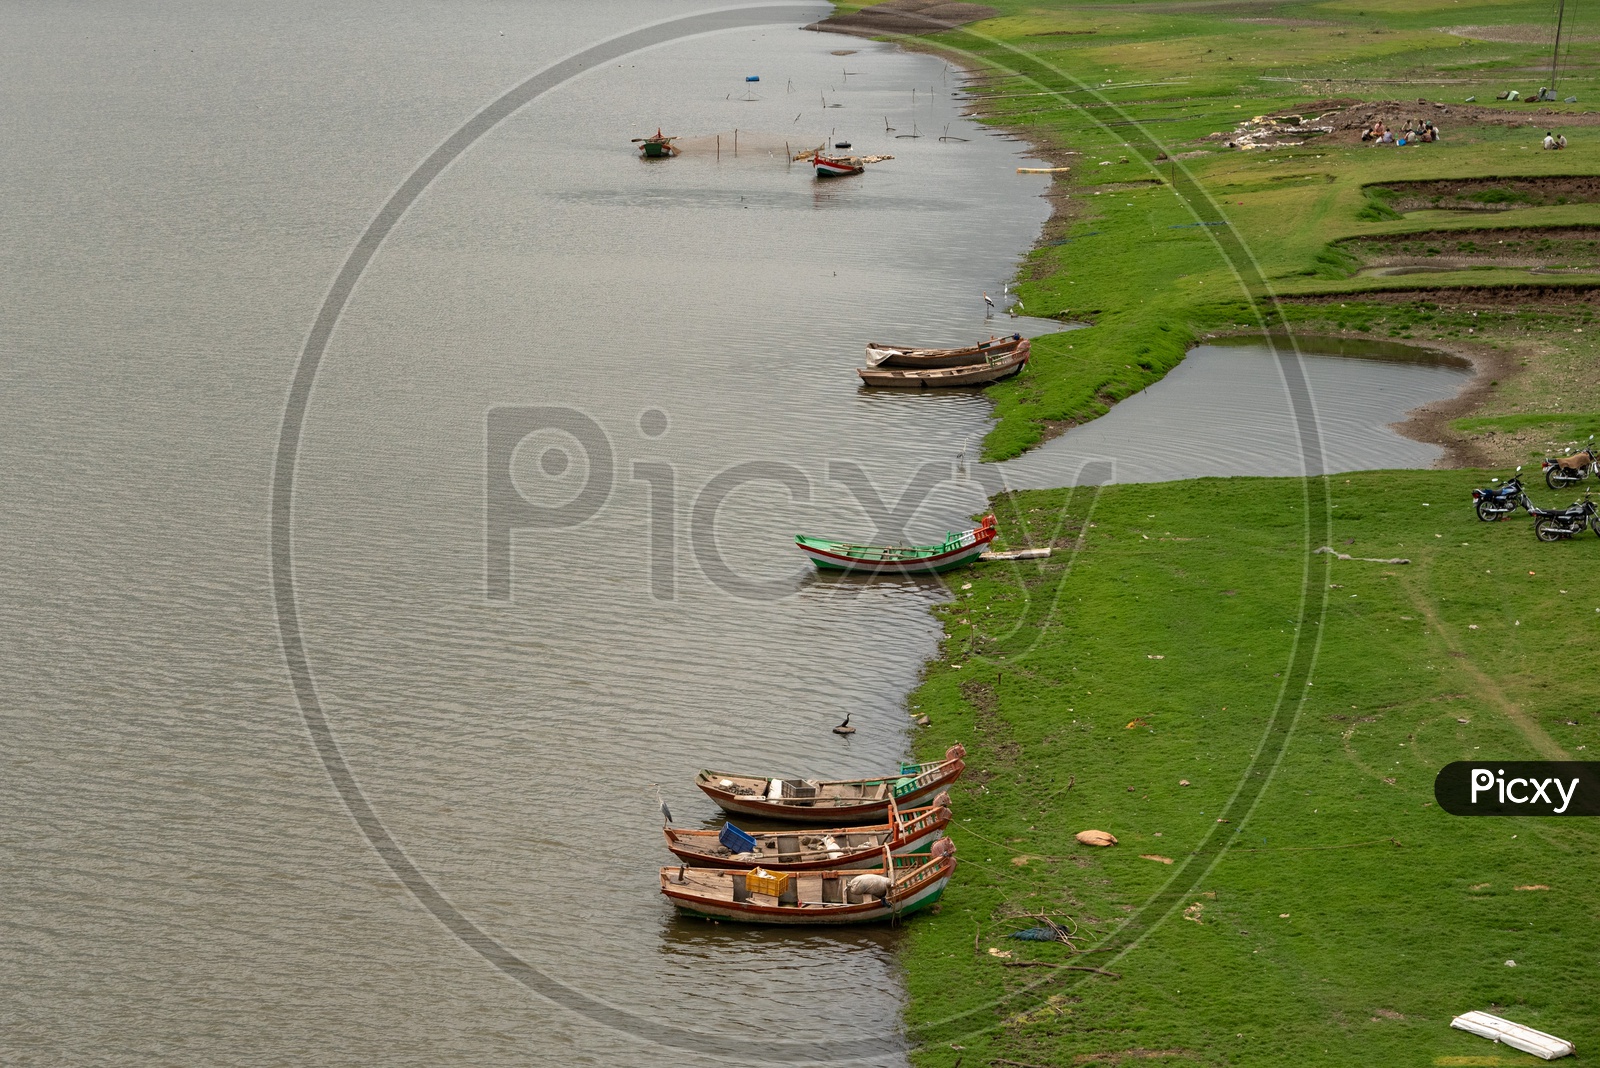 Boats parked at river banks near Bhigwan